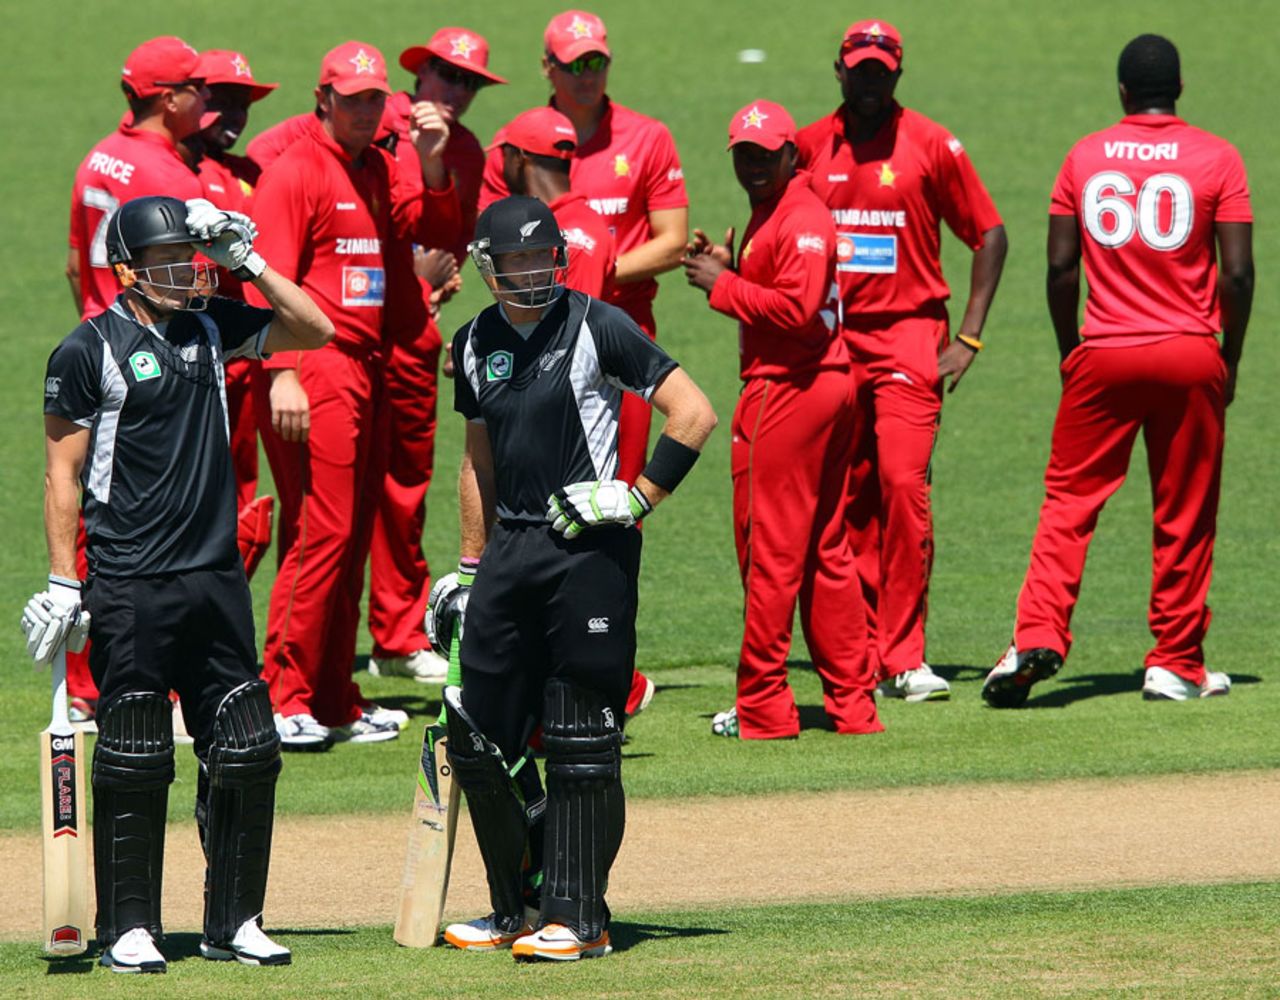 Martin Guptill and Rob Nicol punished the Zimbabwe bowlers yet again, New Zealand v Zimbabwe, 3rd ODI, Napier, February 9, 2012